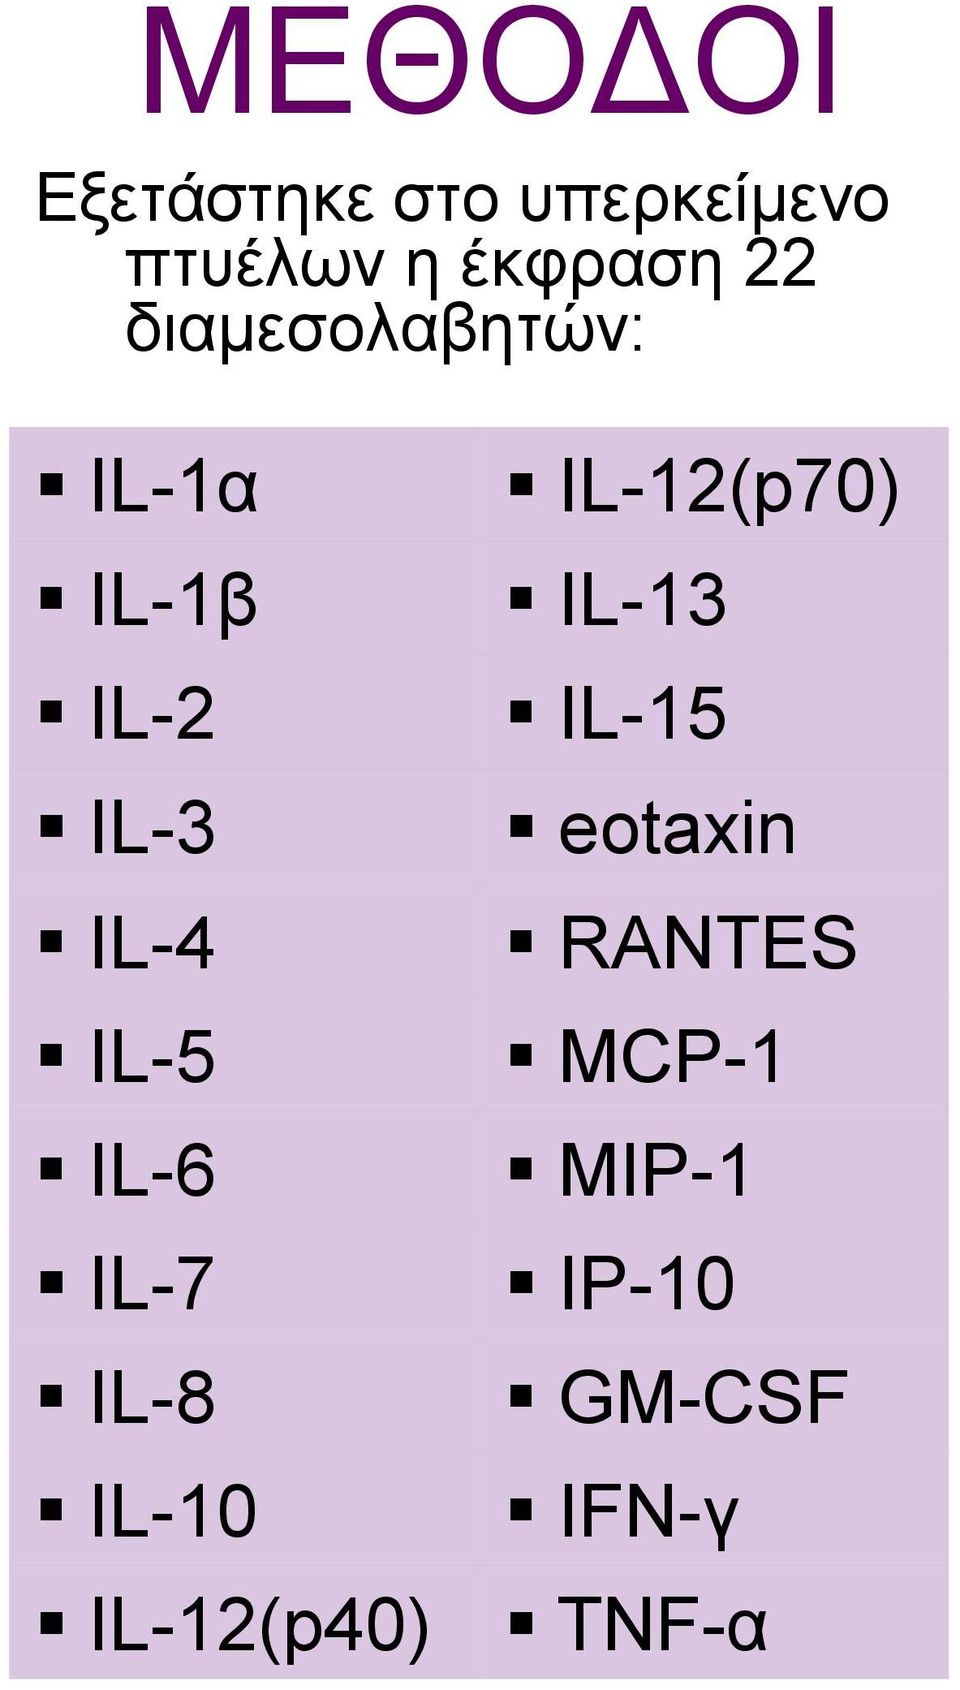 IL-6 IL-7 IL-8 IL-10 IL-12(p70) IL-13 IL-15 eotaxin